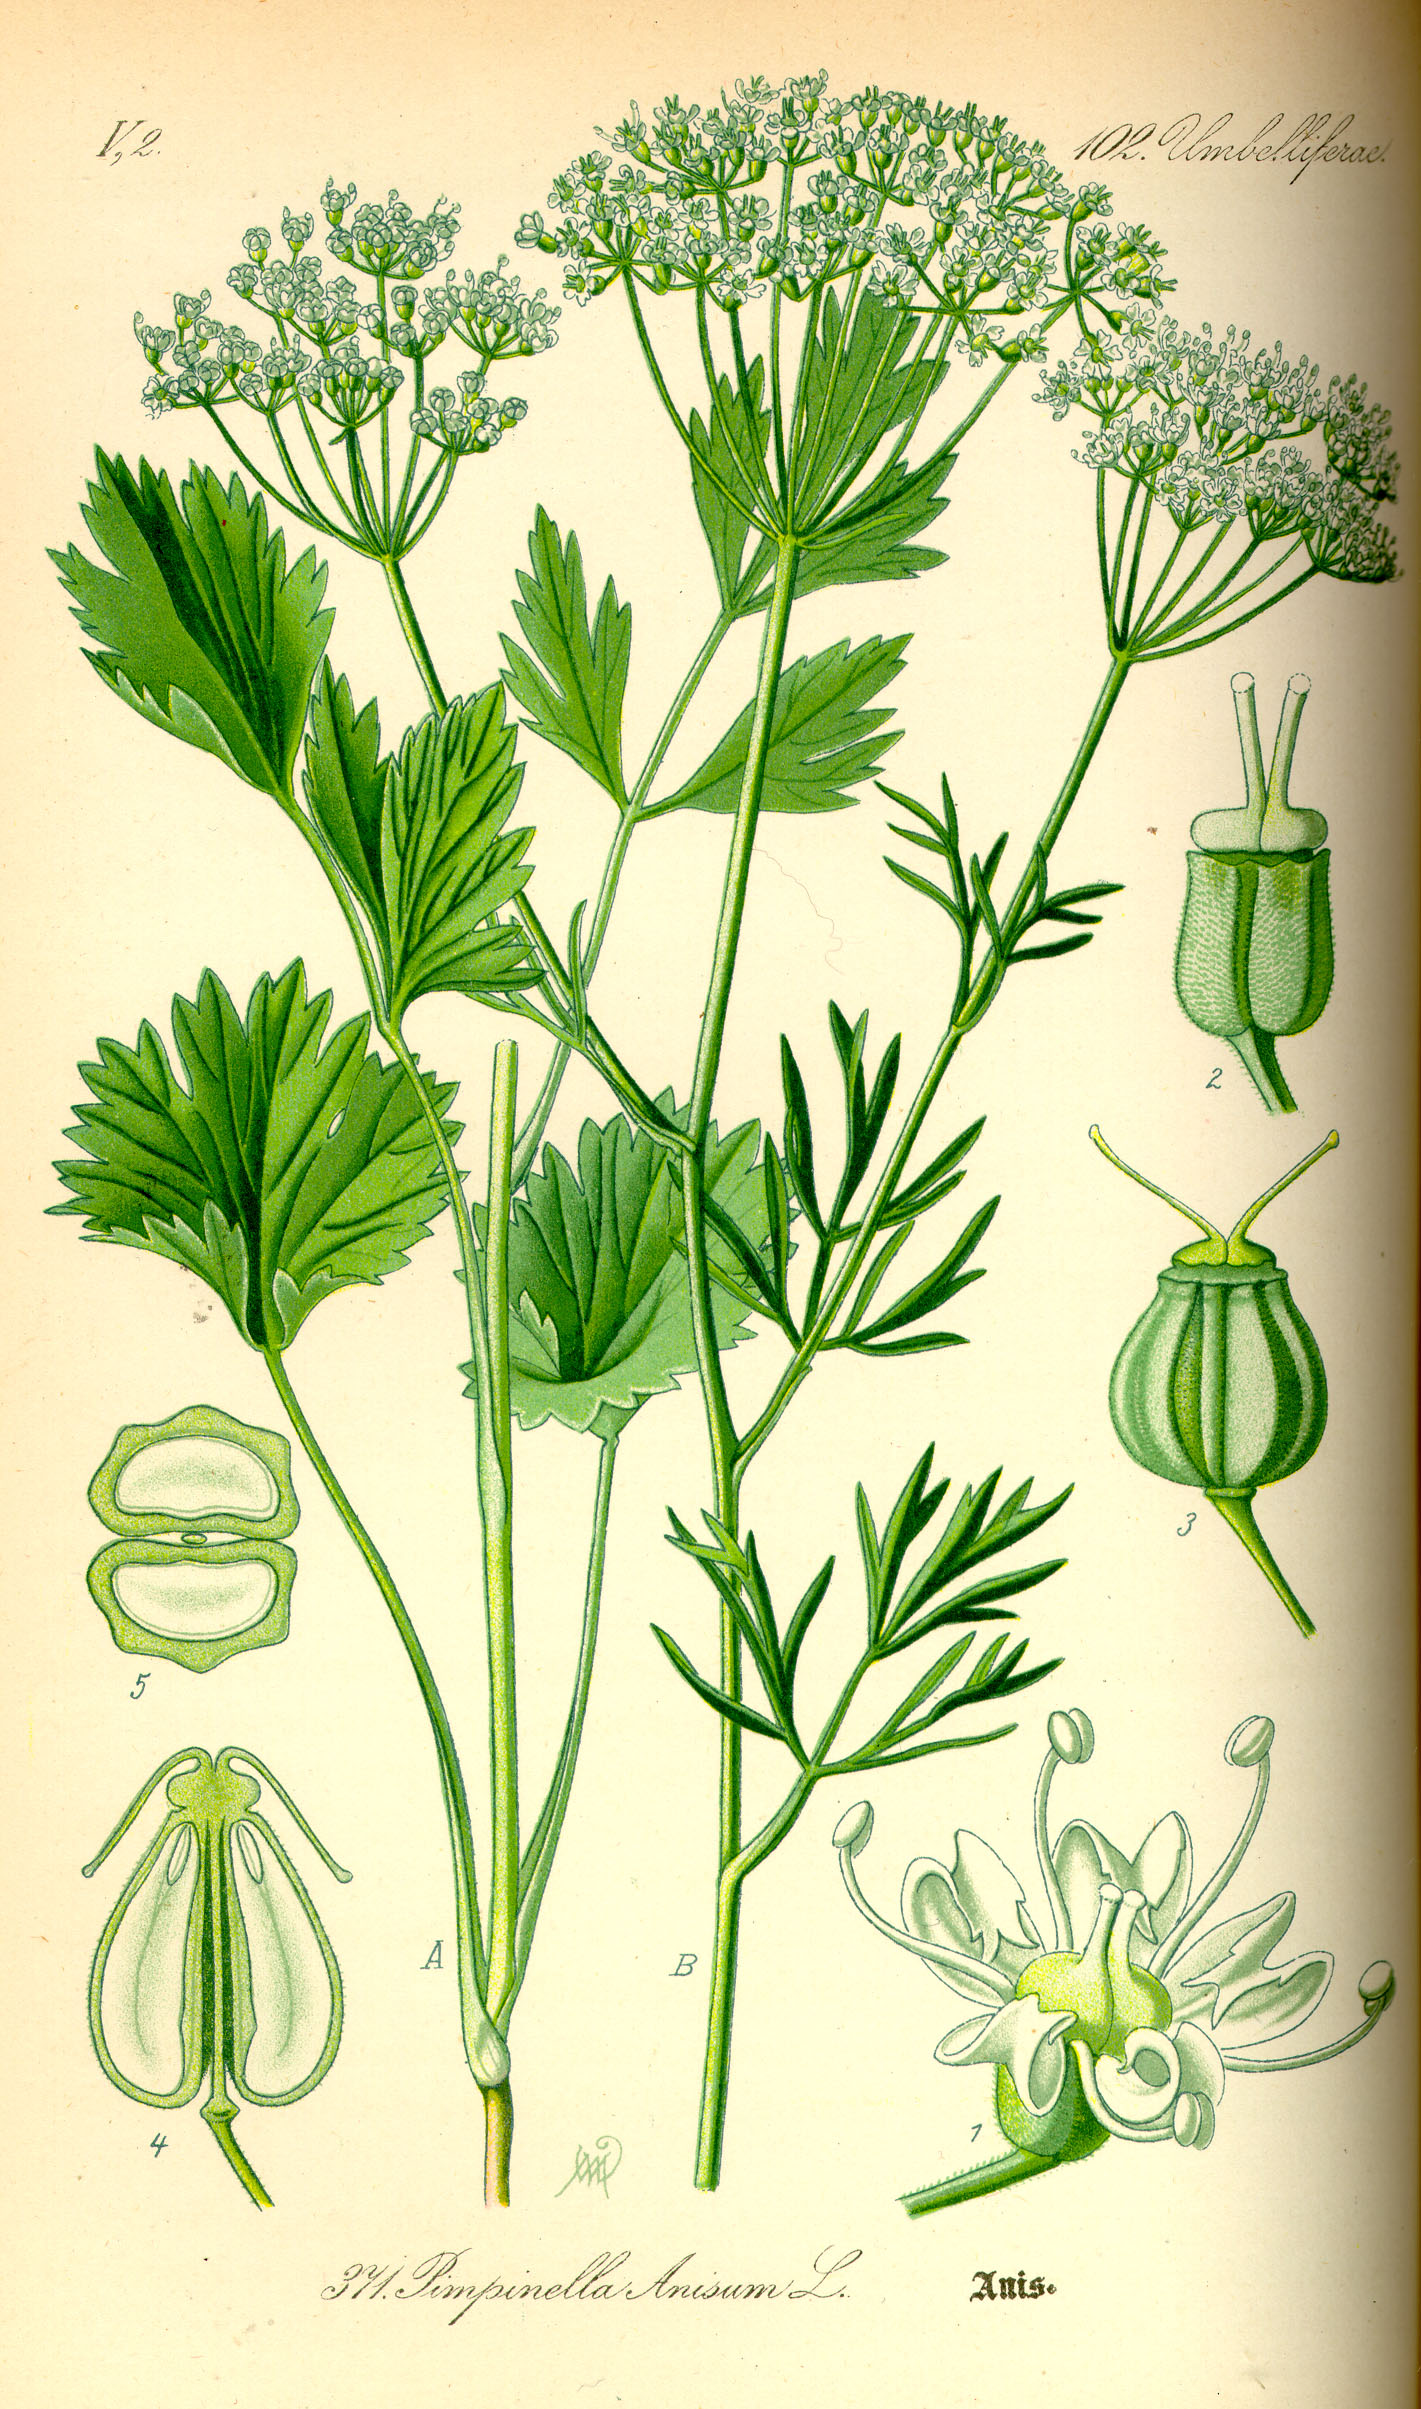 Ilustração botânica da planta erva-doce ou anis, como também é conhecida